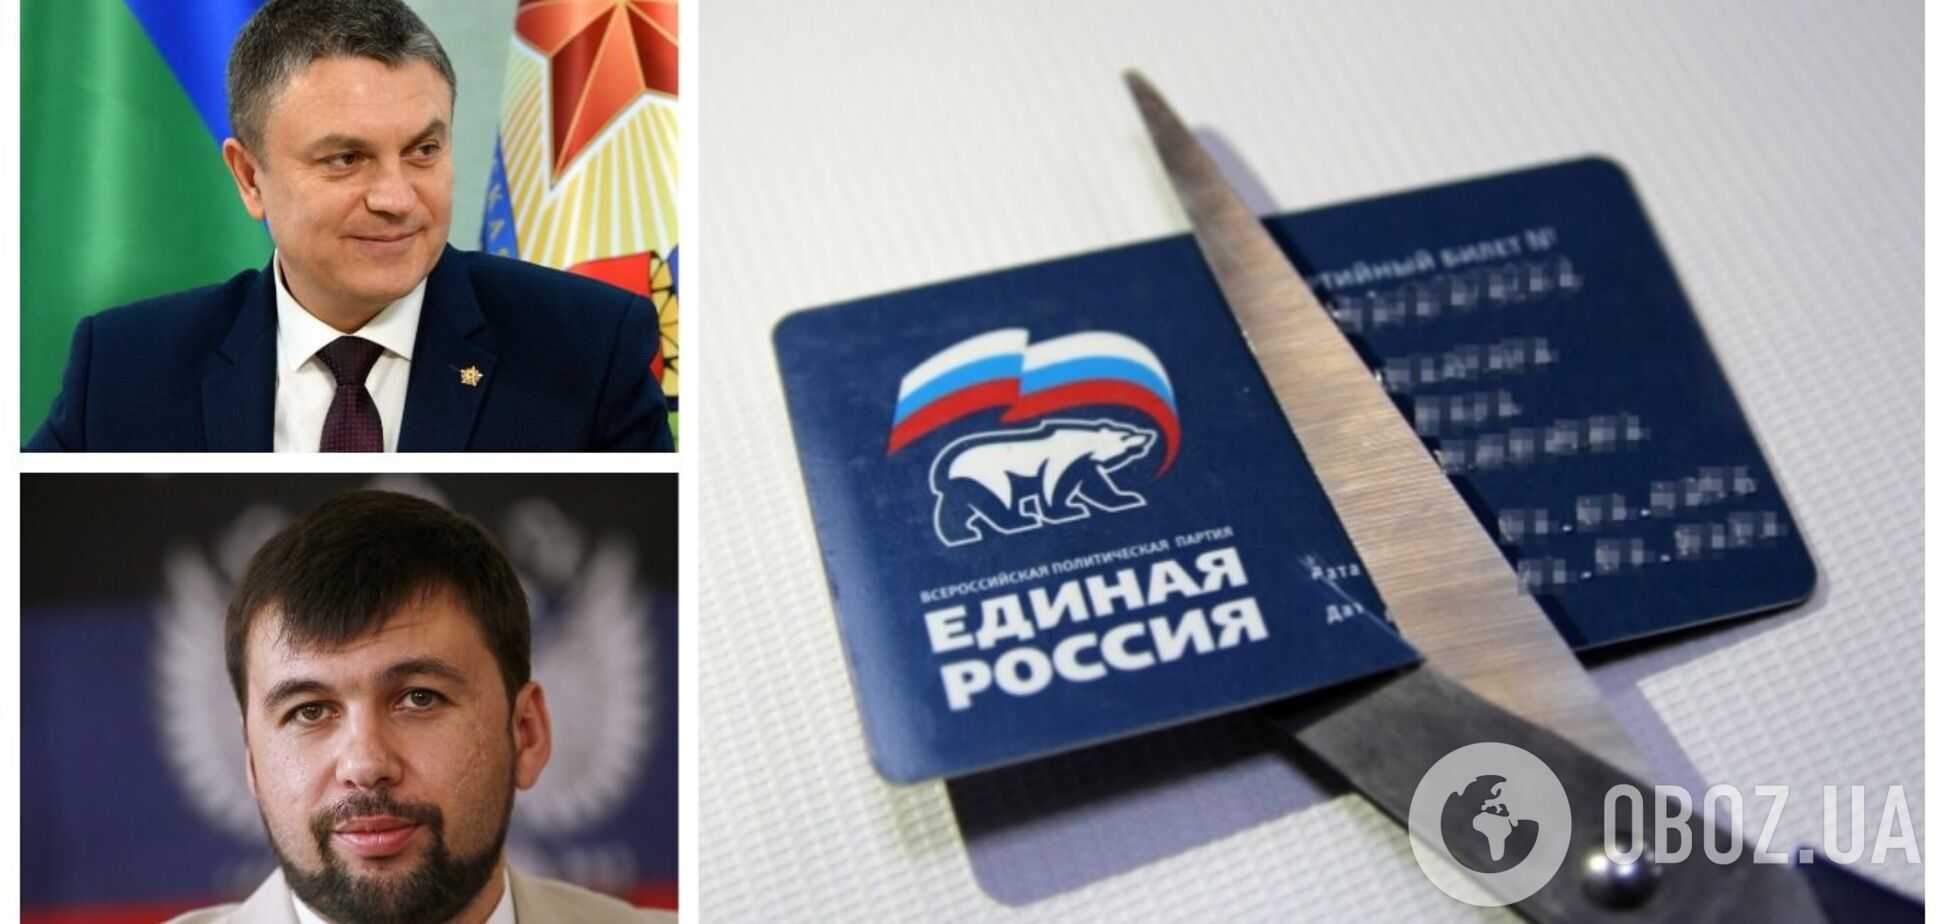 Ватажків 'Л/ДНР' офіційно визнали 'єдиноросами' Путіна